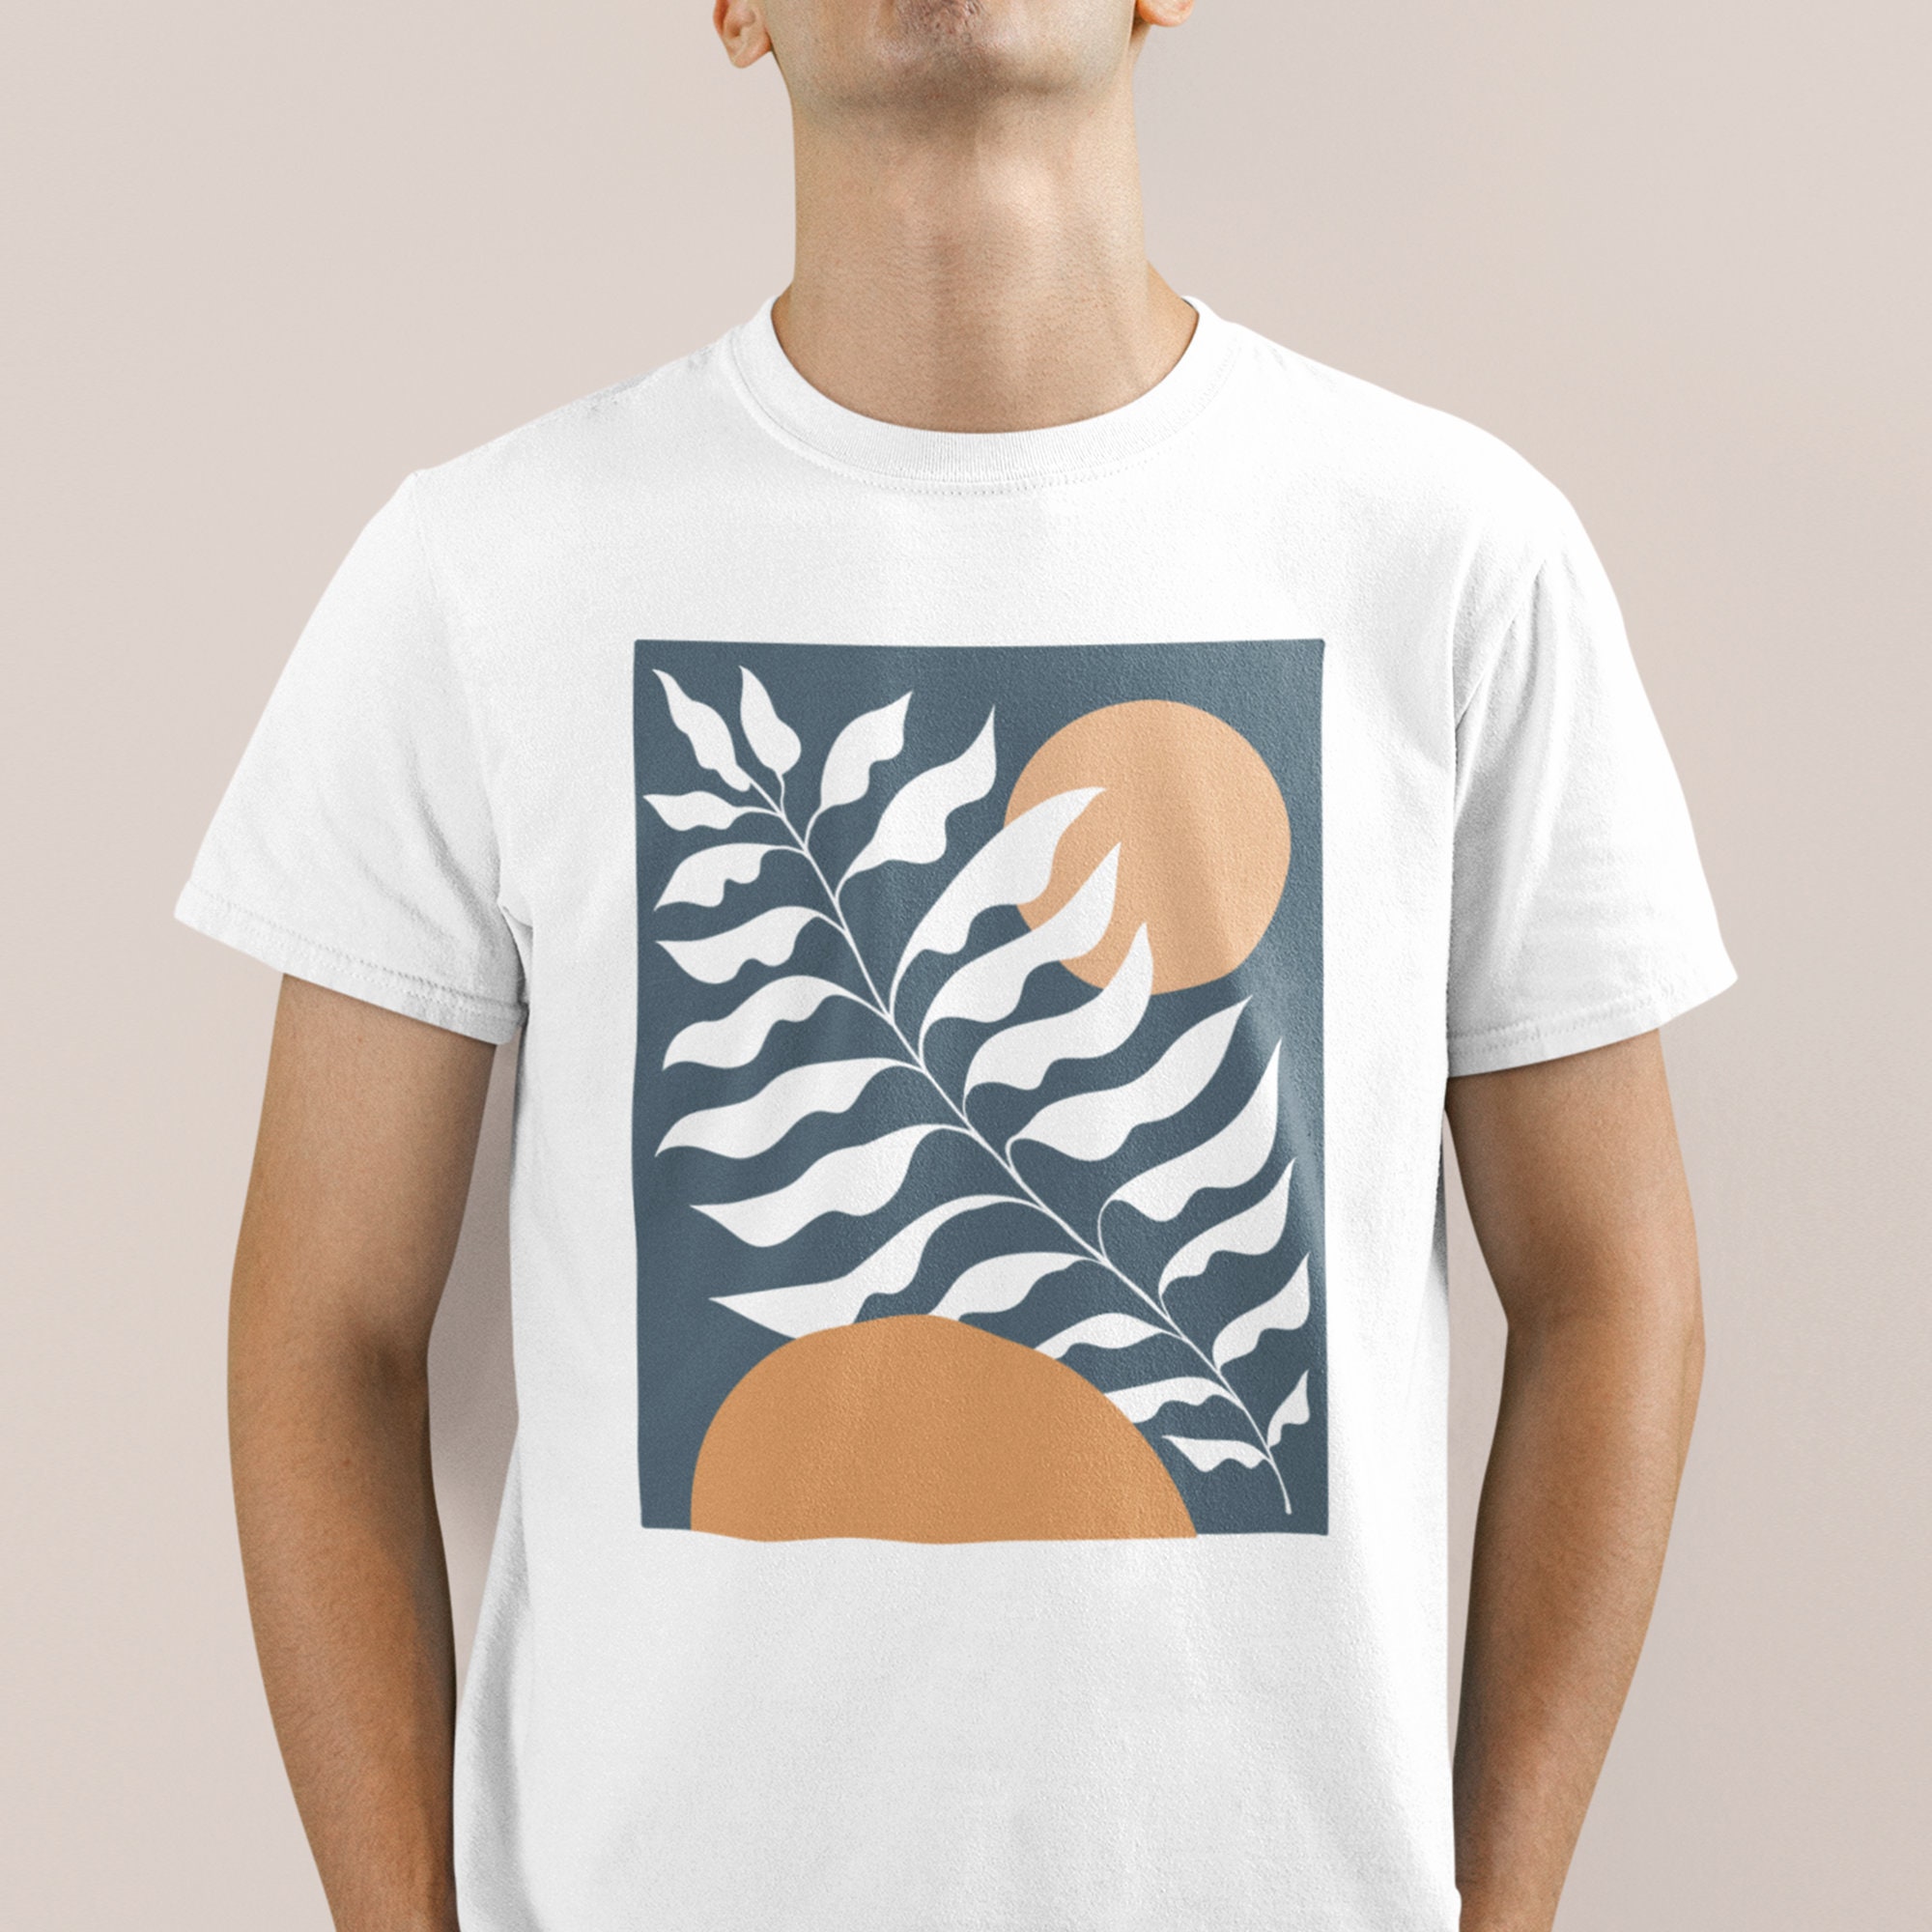 Graphic Abstract Shirt Art Drawing Shirt Boho Tshirt 